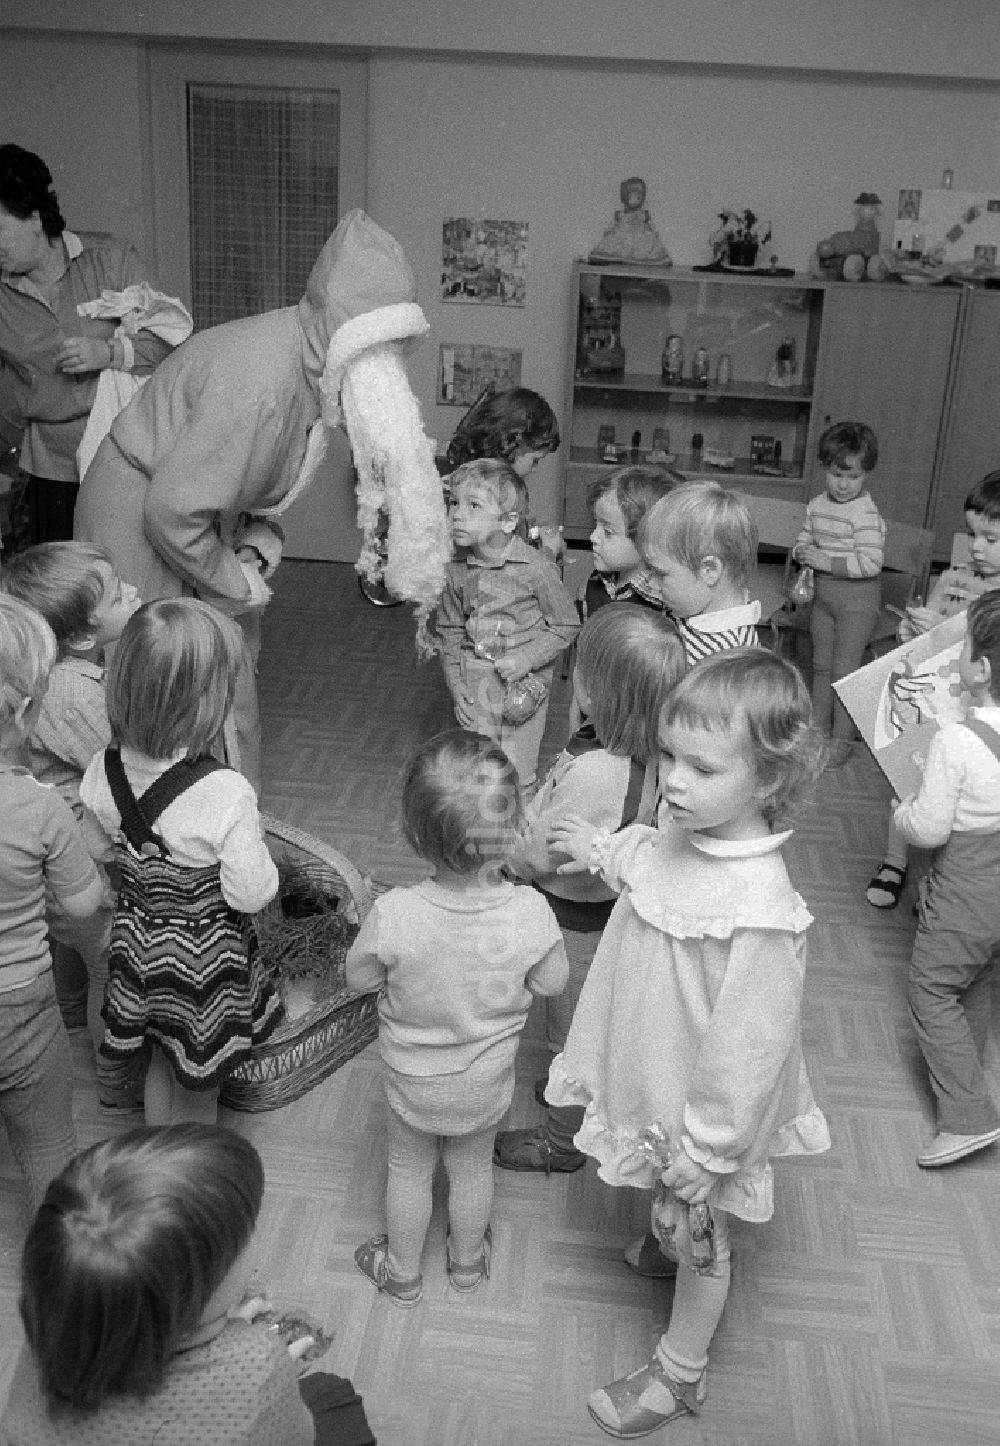 DDR-Fotoarchiv: Berlin - Weihnachtsfeier im Kindergarten in Berlin, der ehemaligen Hauptstadt der DDR, Deutsche Demokratische Republik